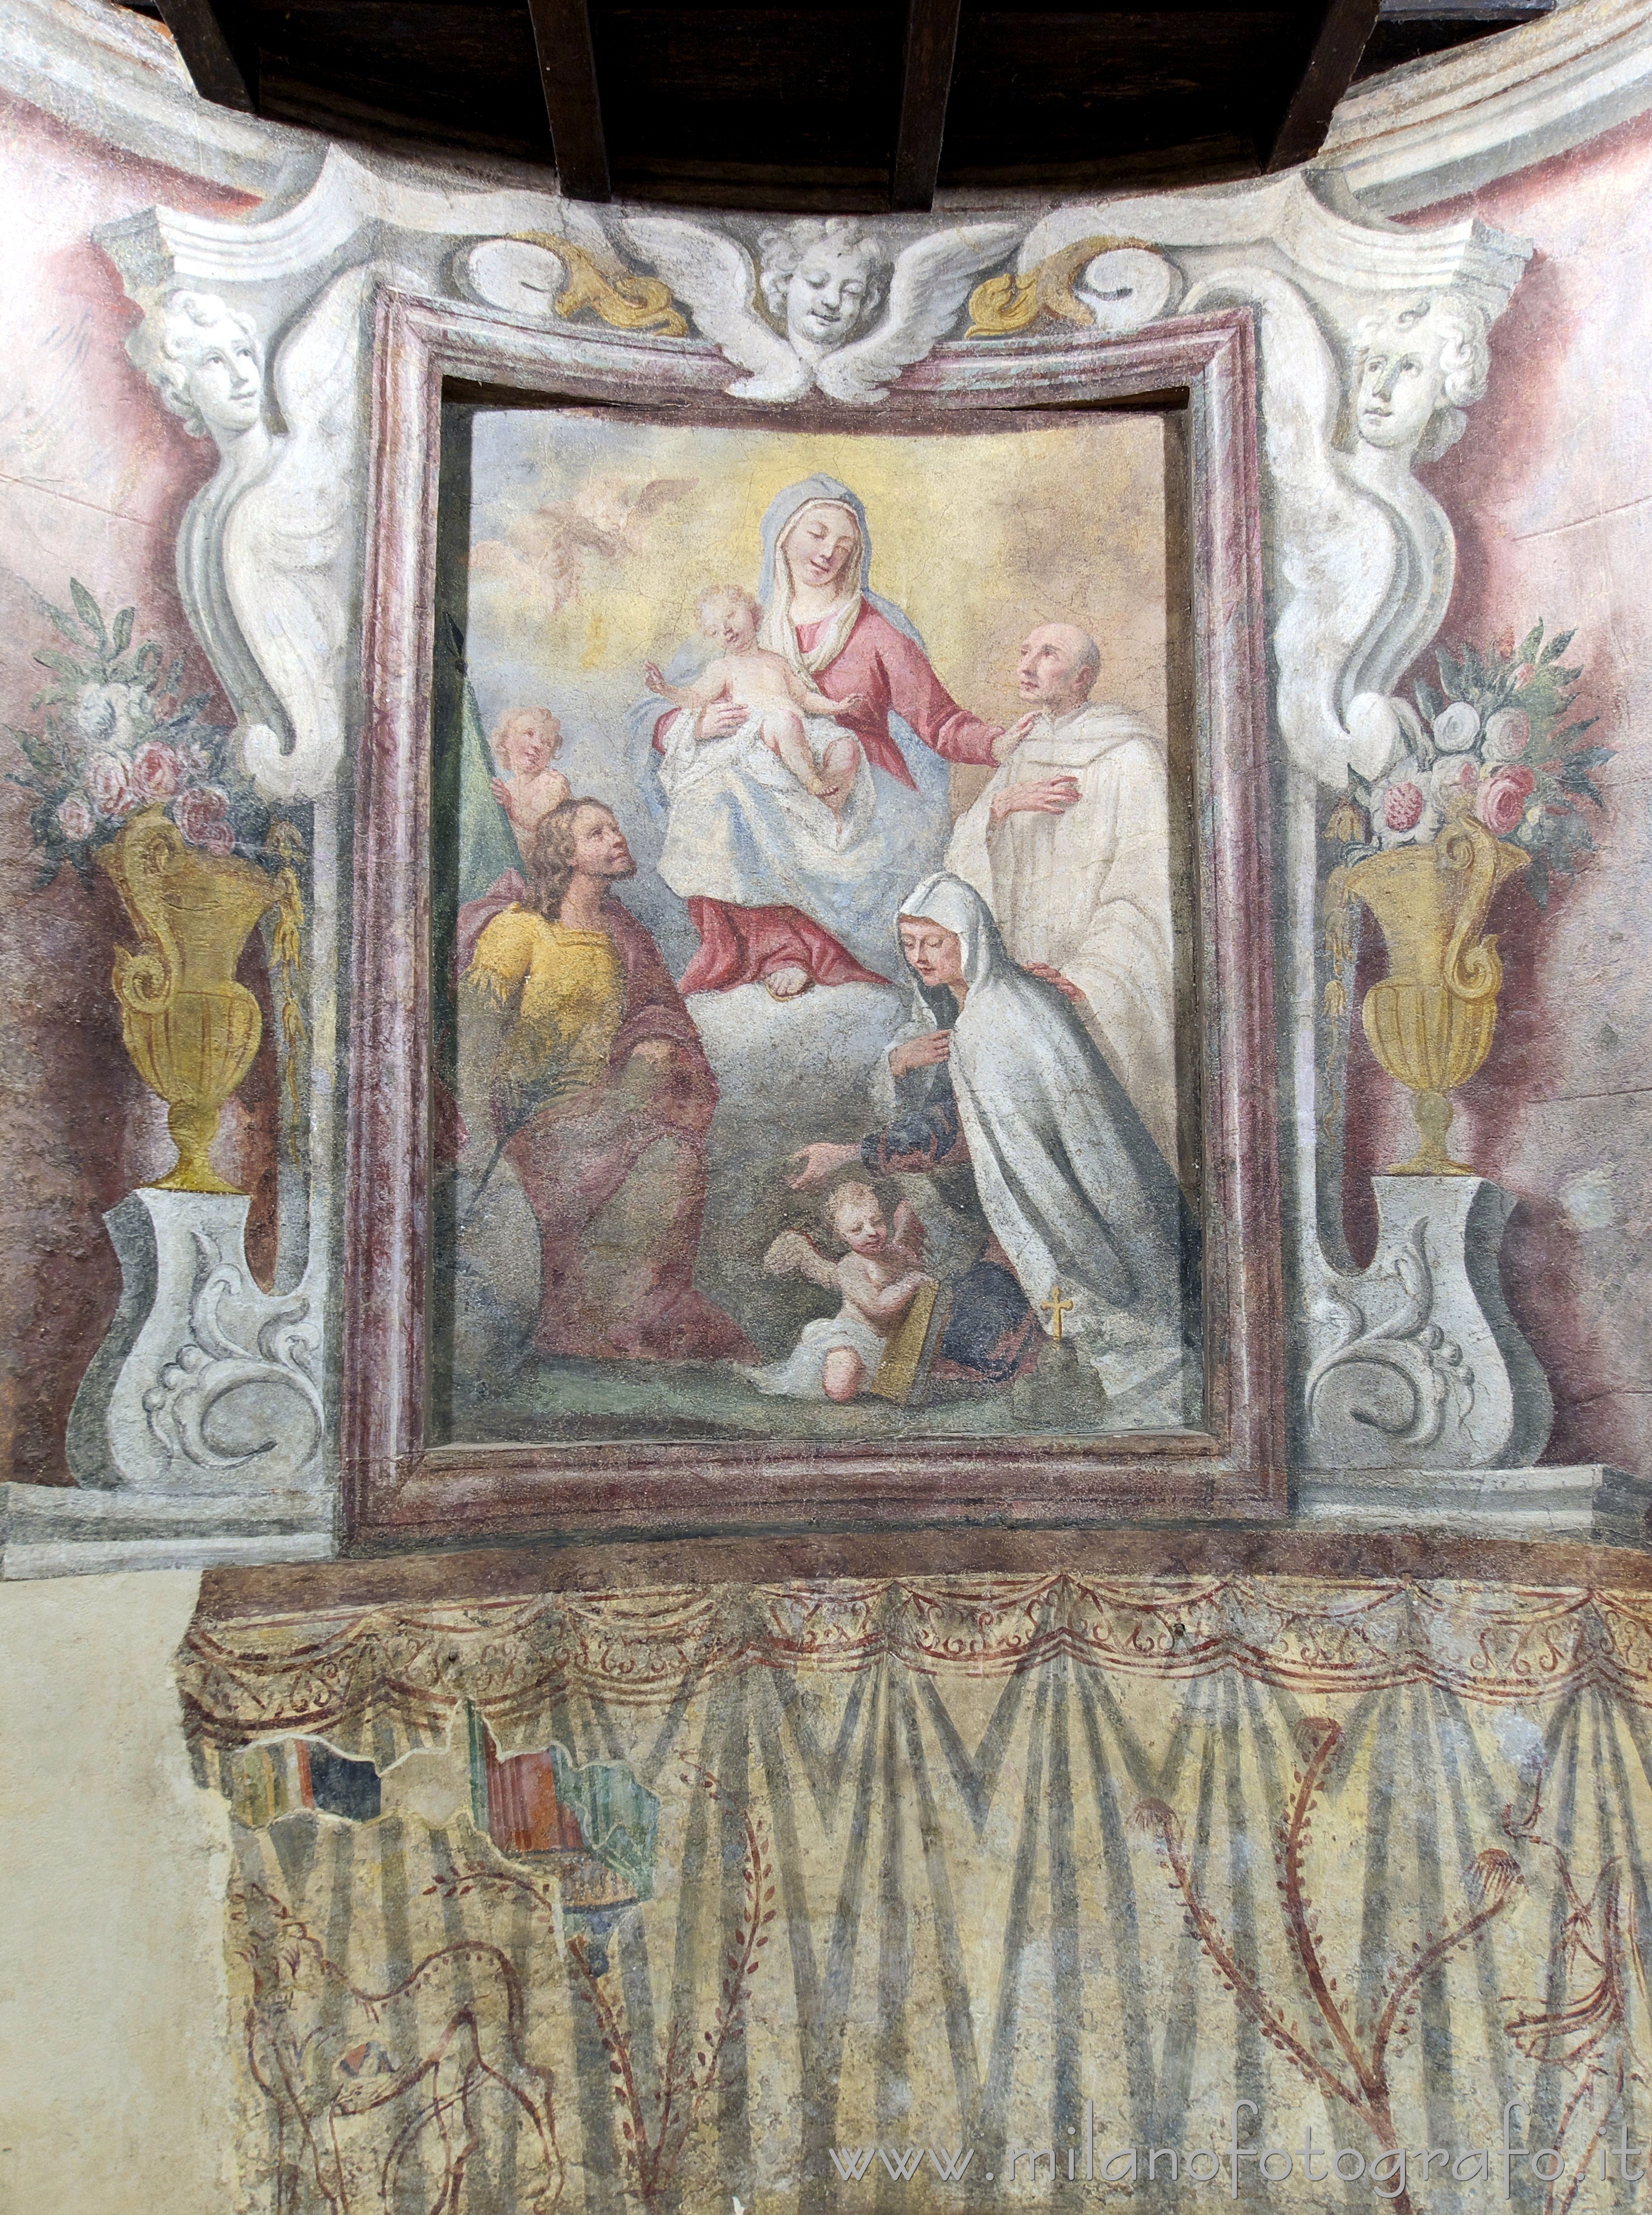 Milano: Parte centrale della parete dell'abside dell'Oratorio di San Protaso - Milano